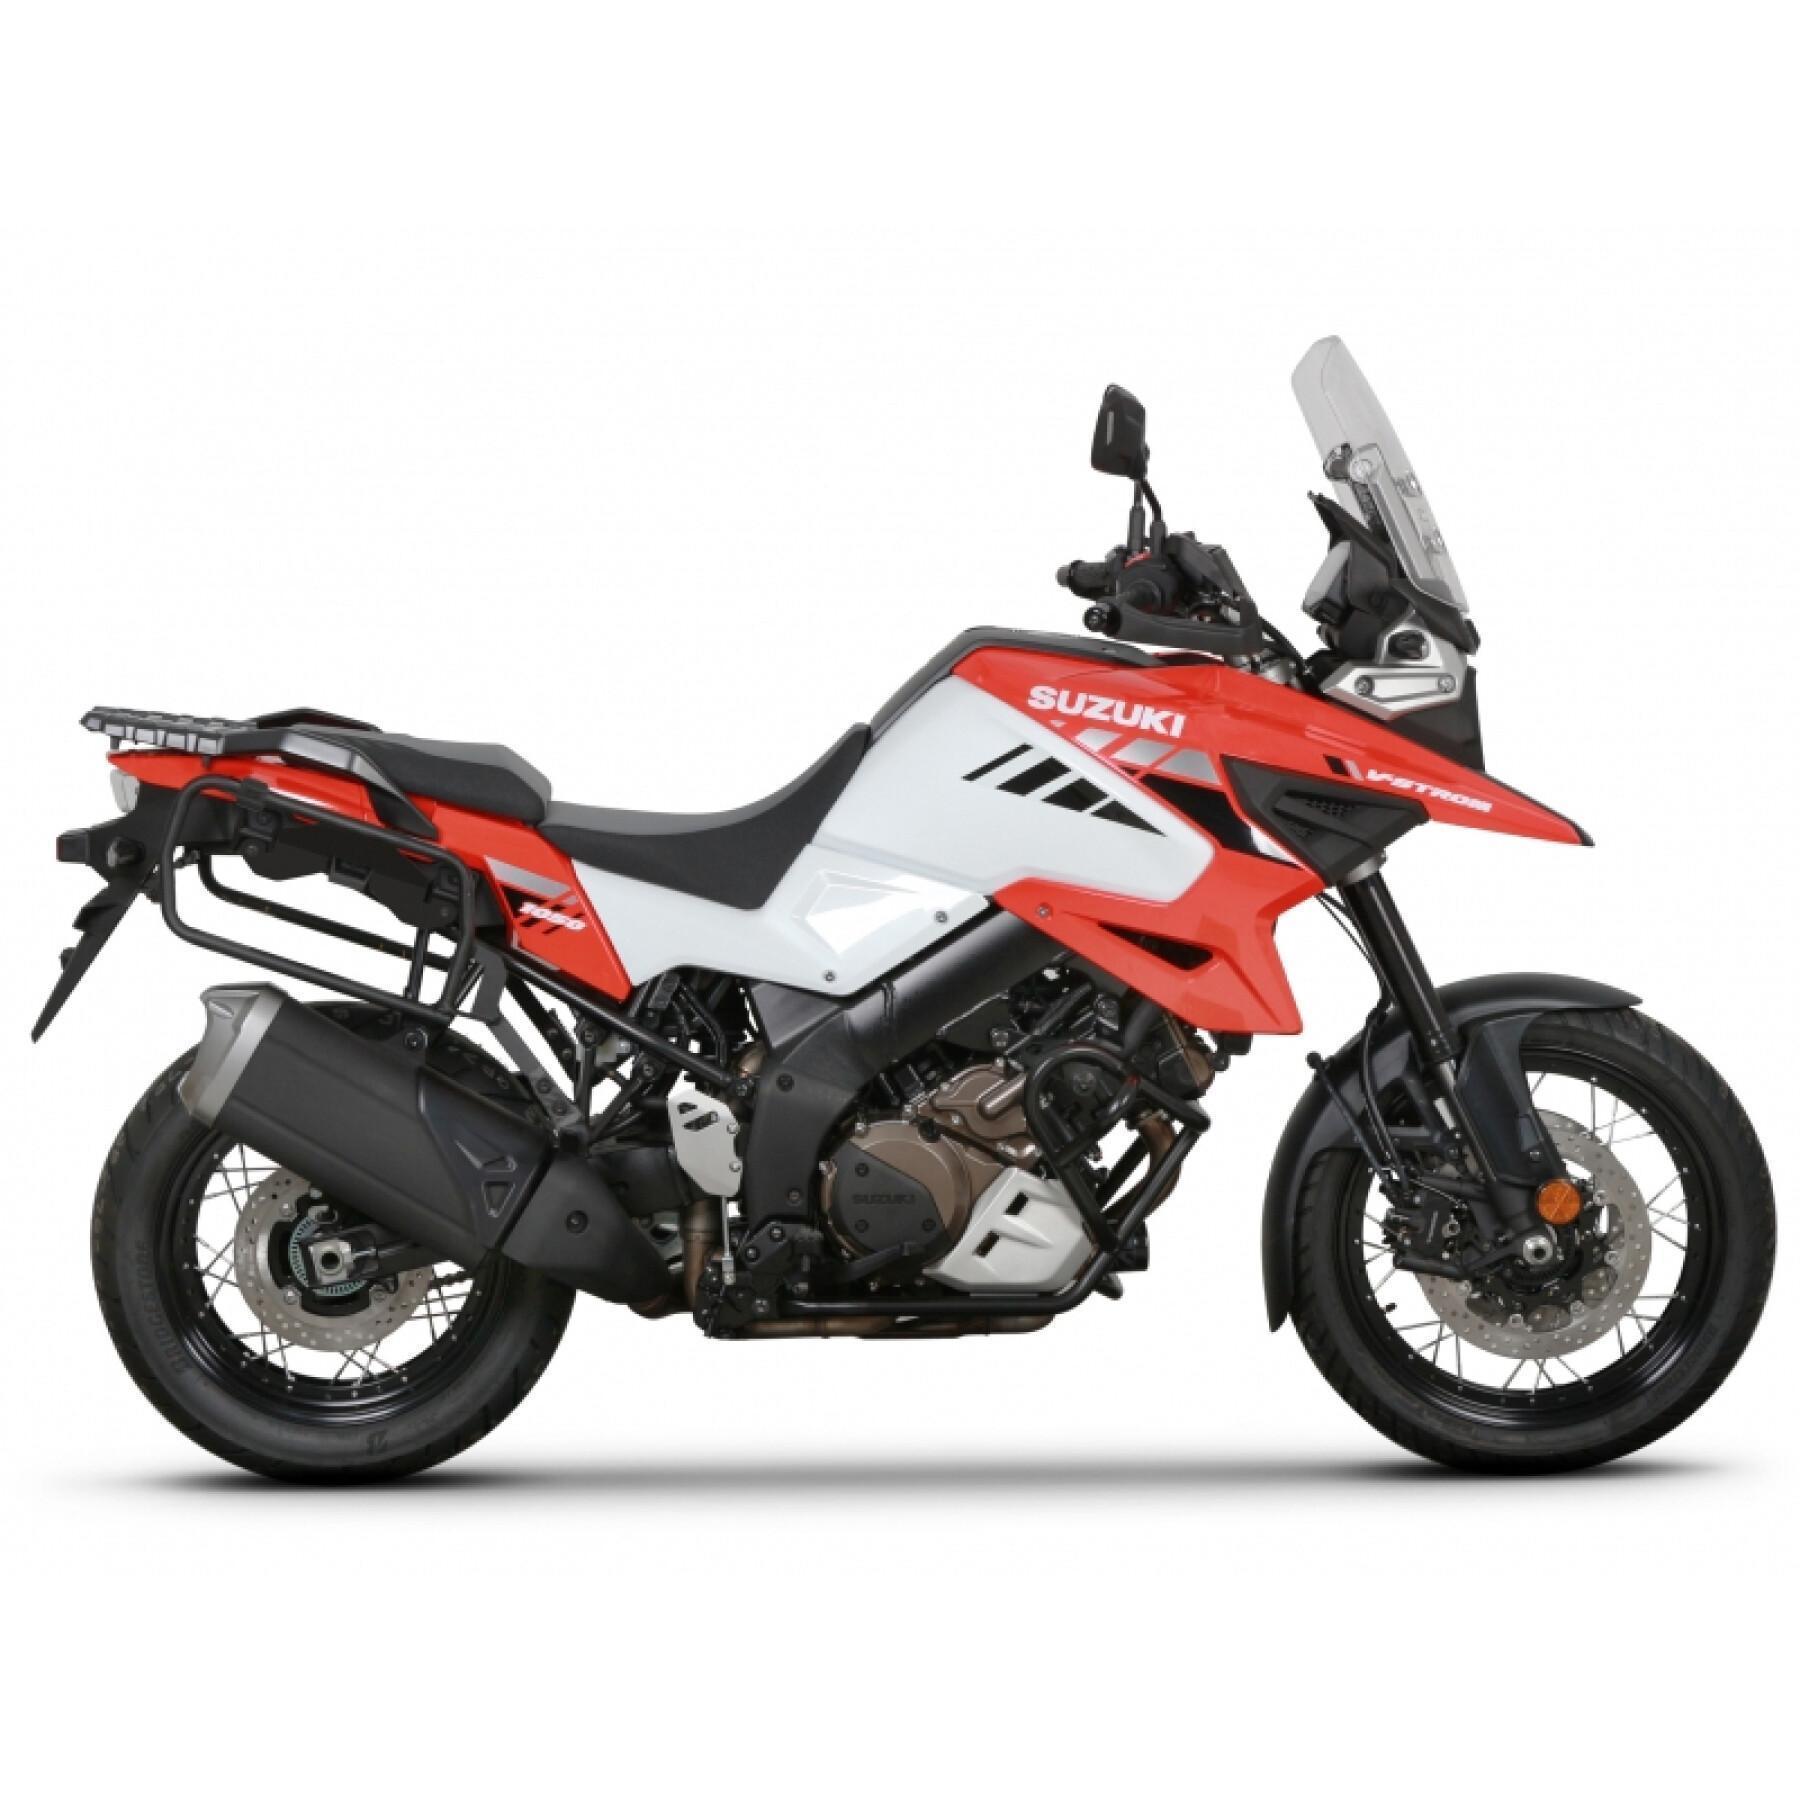 Sidostöd för motorcykel Shad 4P System Suzuki V-Strom 1000/ V-Strom 1050 Xt 2014-2020